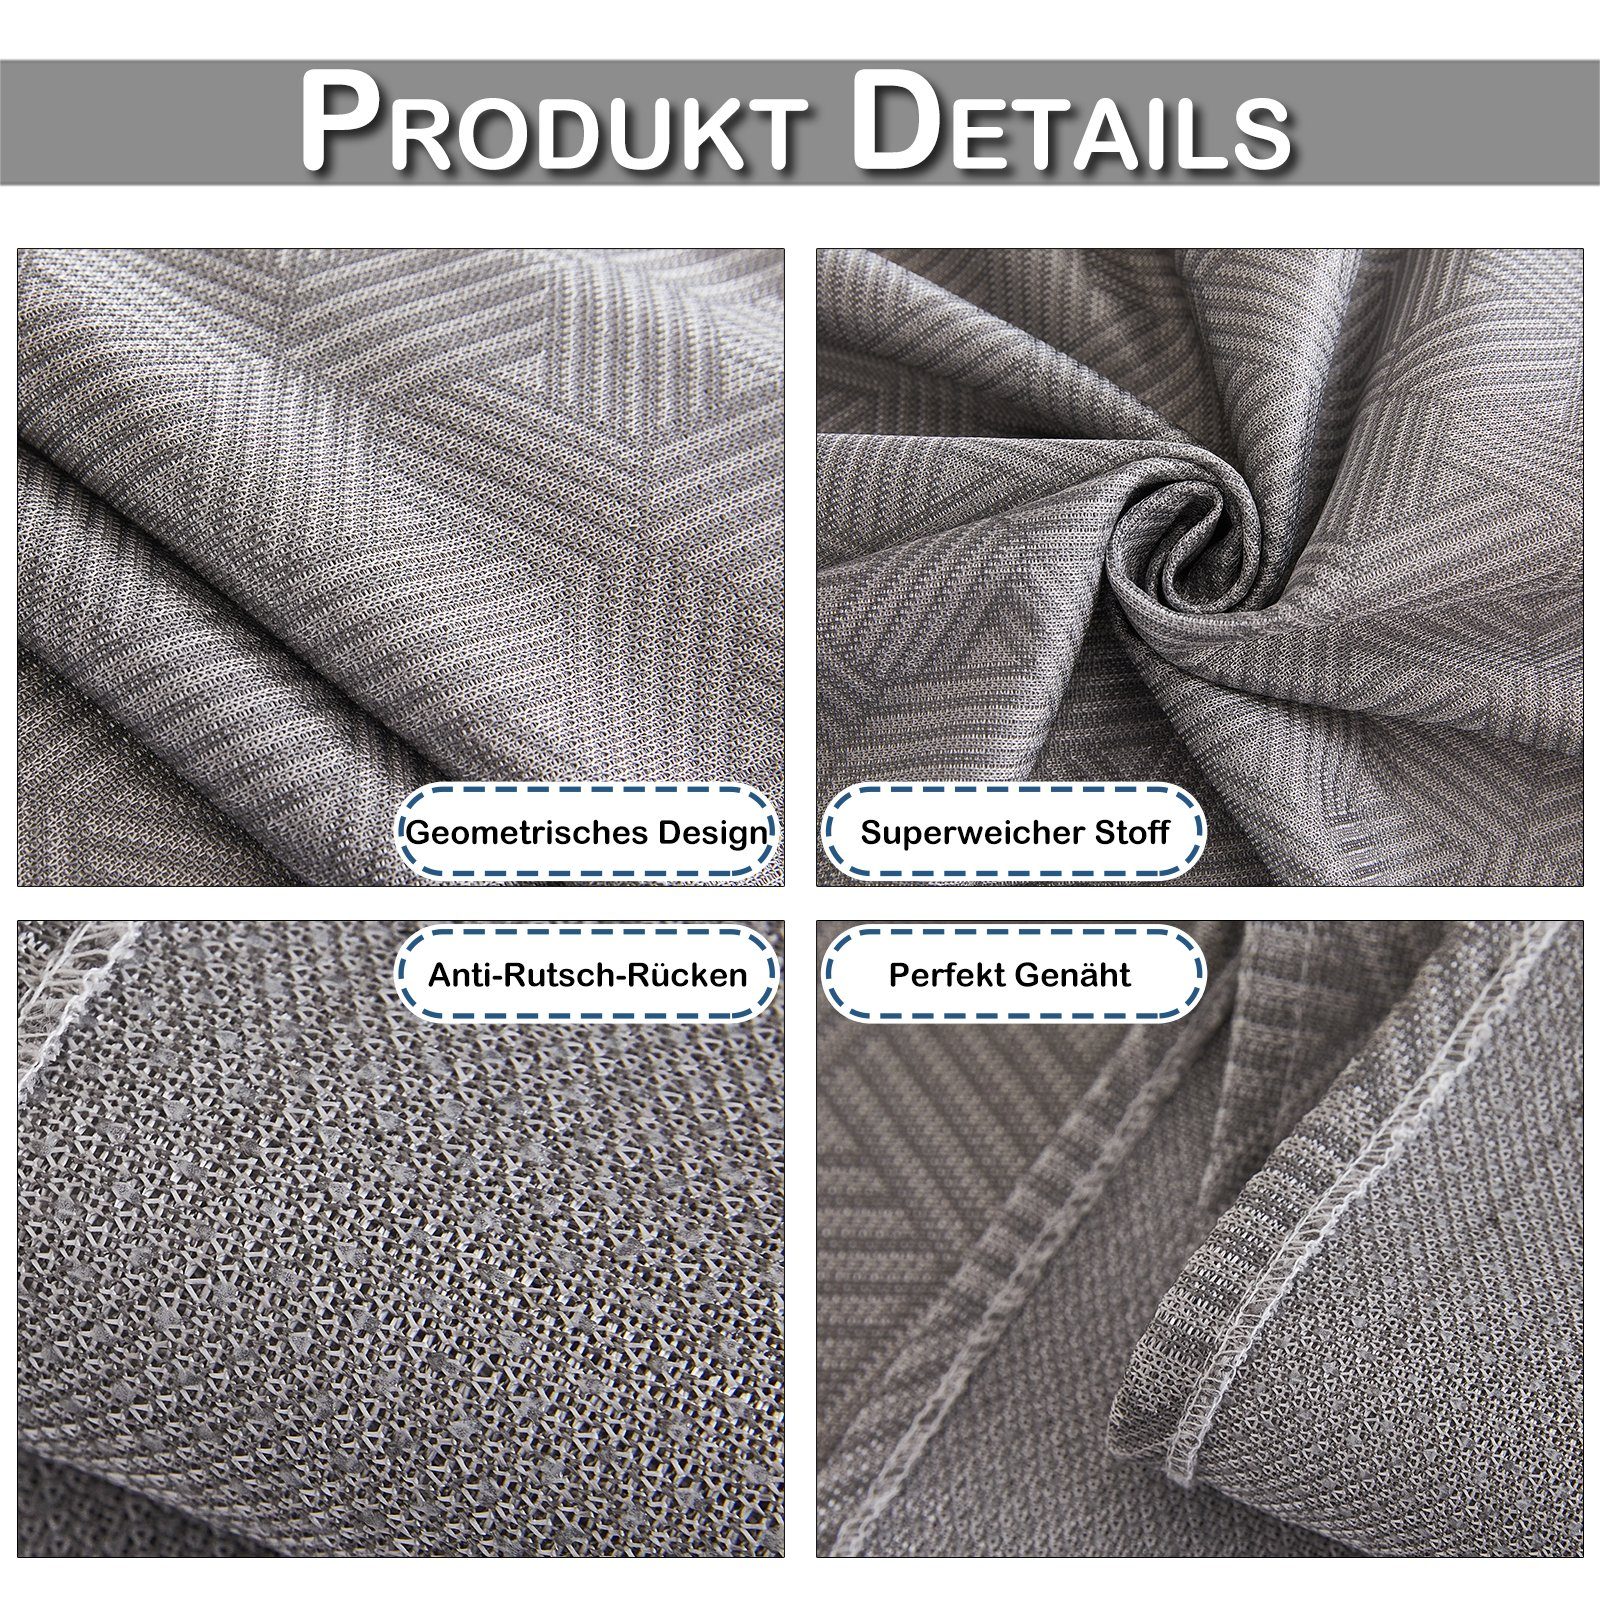 Sofahusse Eis Bettlaken, Sofa Seide, Muster, für Geometrisches Rosnek Anti-Rutsch